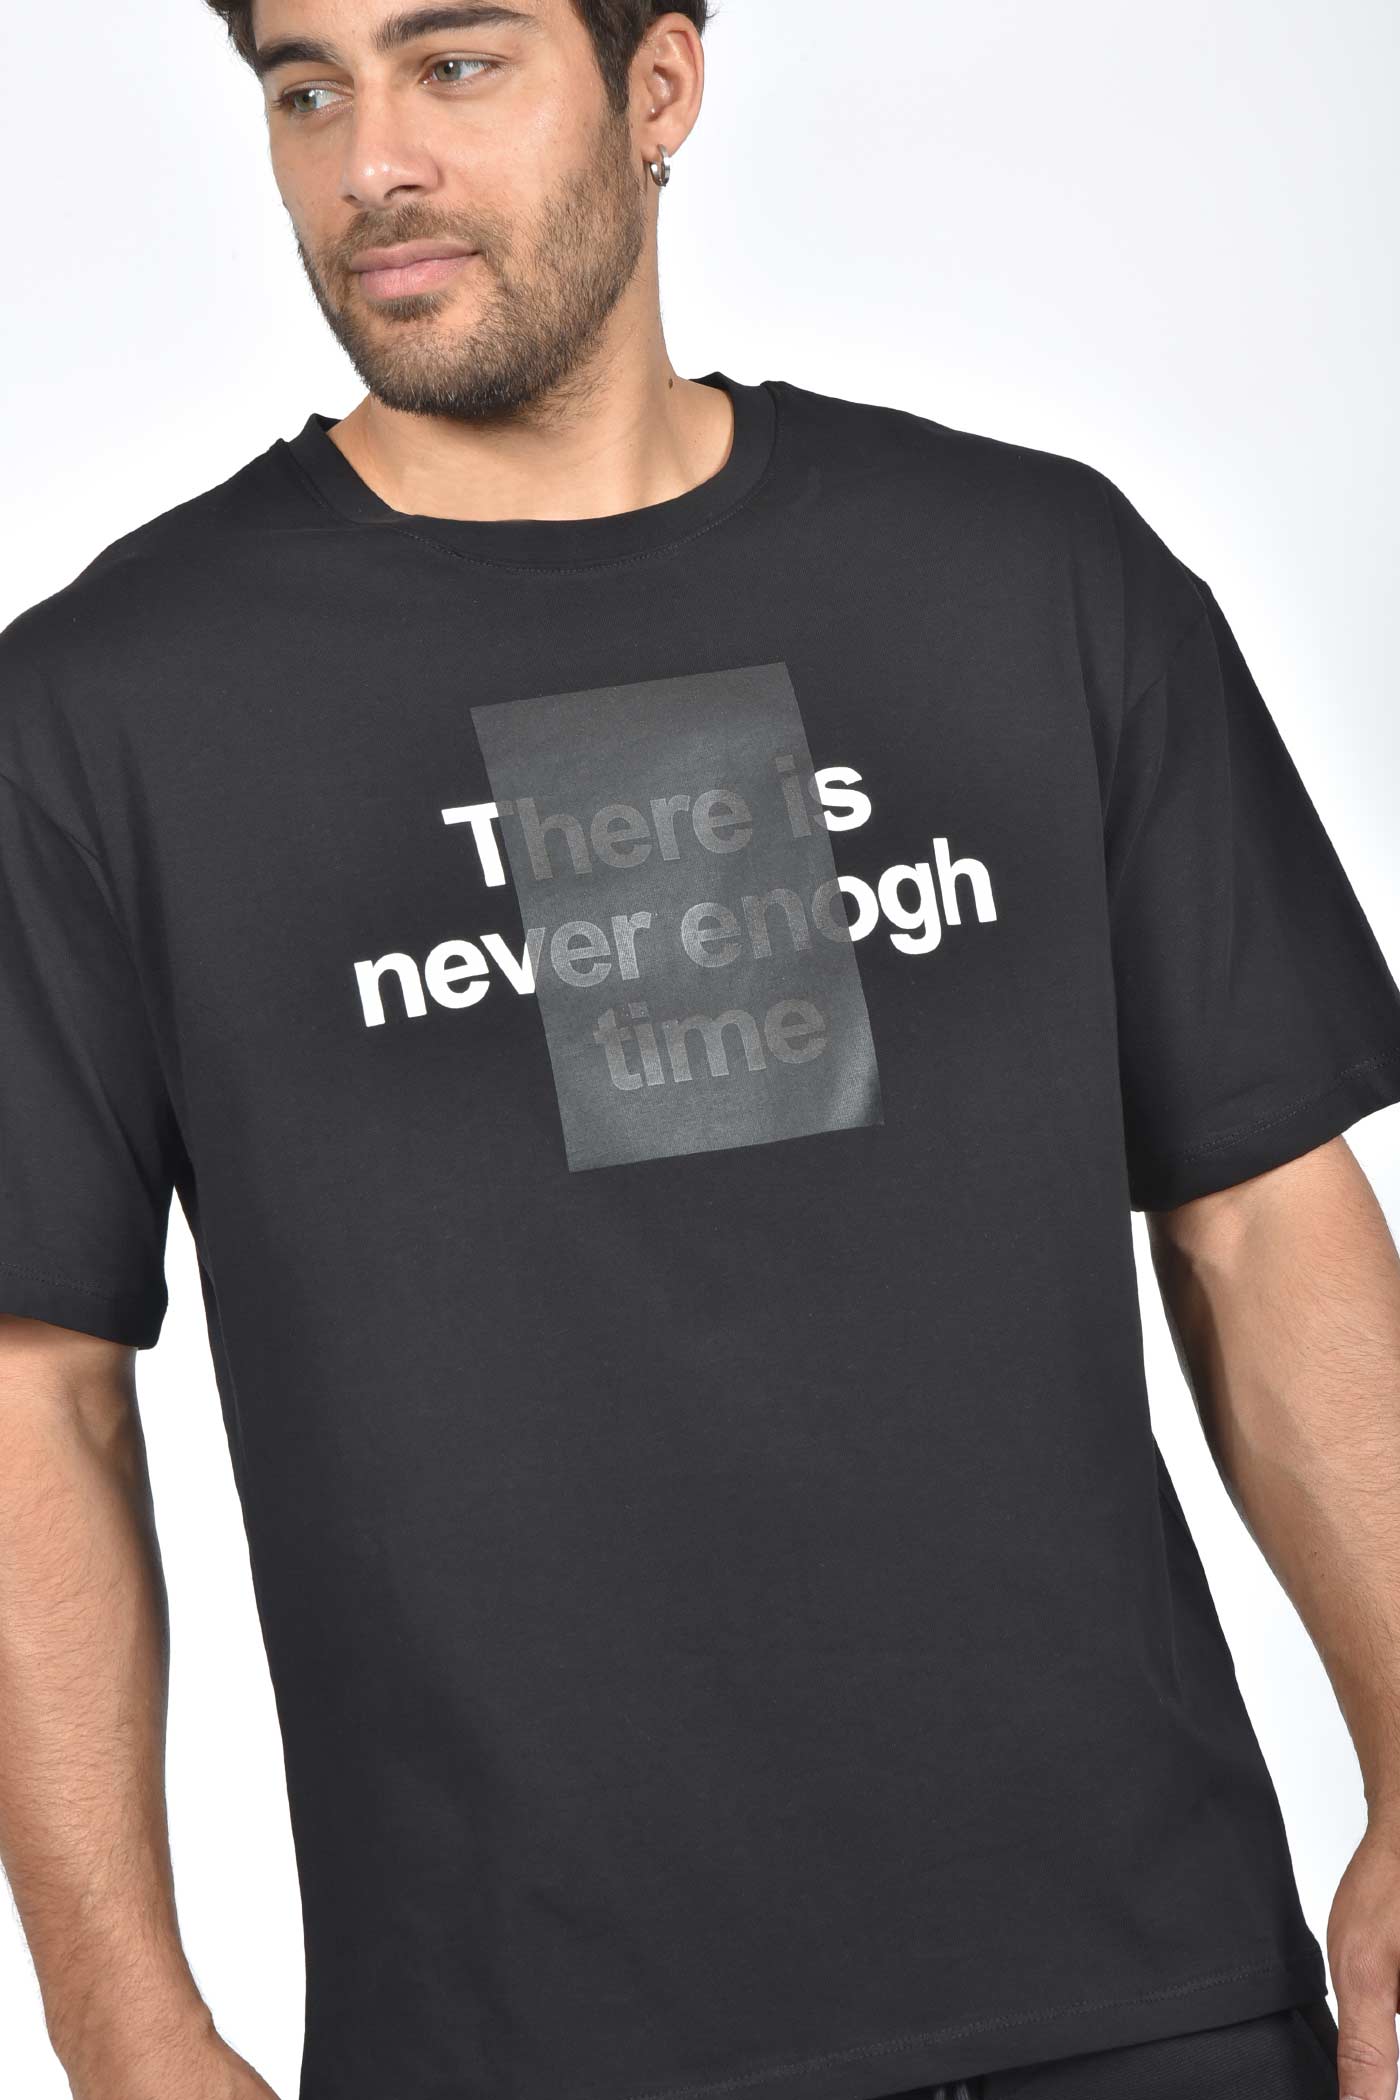 ανδρικό-oversized-t-shirt-με-time-quote